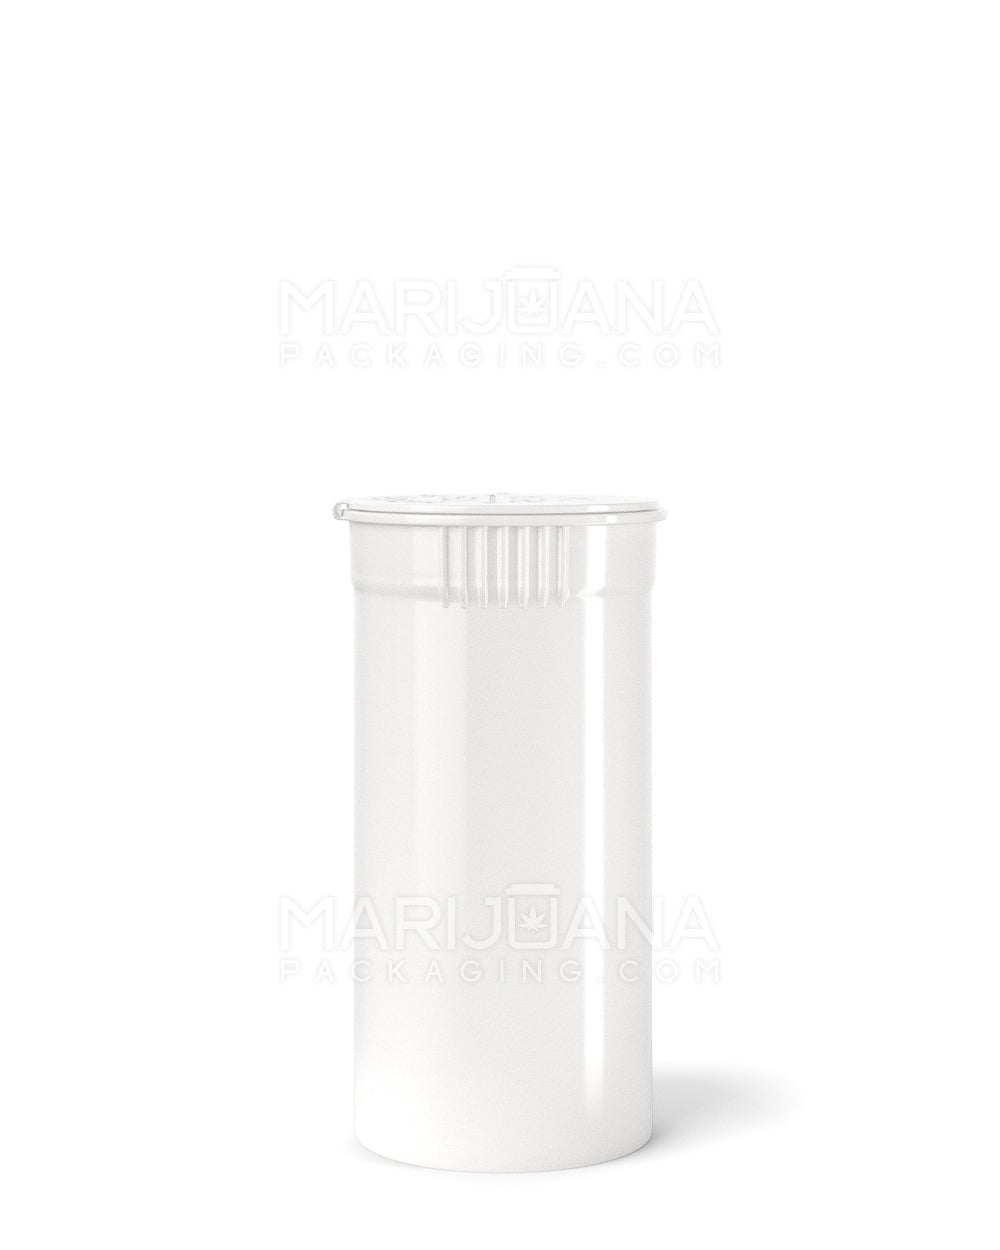 POLLEN GEAR | Child Resistant KSC Opaque White Pop Top Bottles | 13dr - 2g - 592 Count - 2